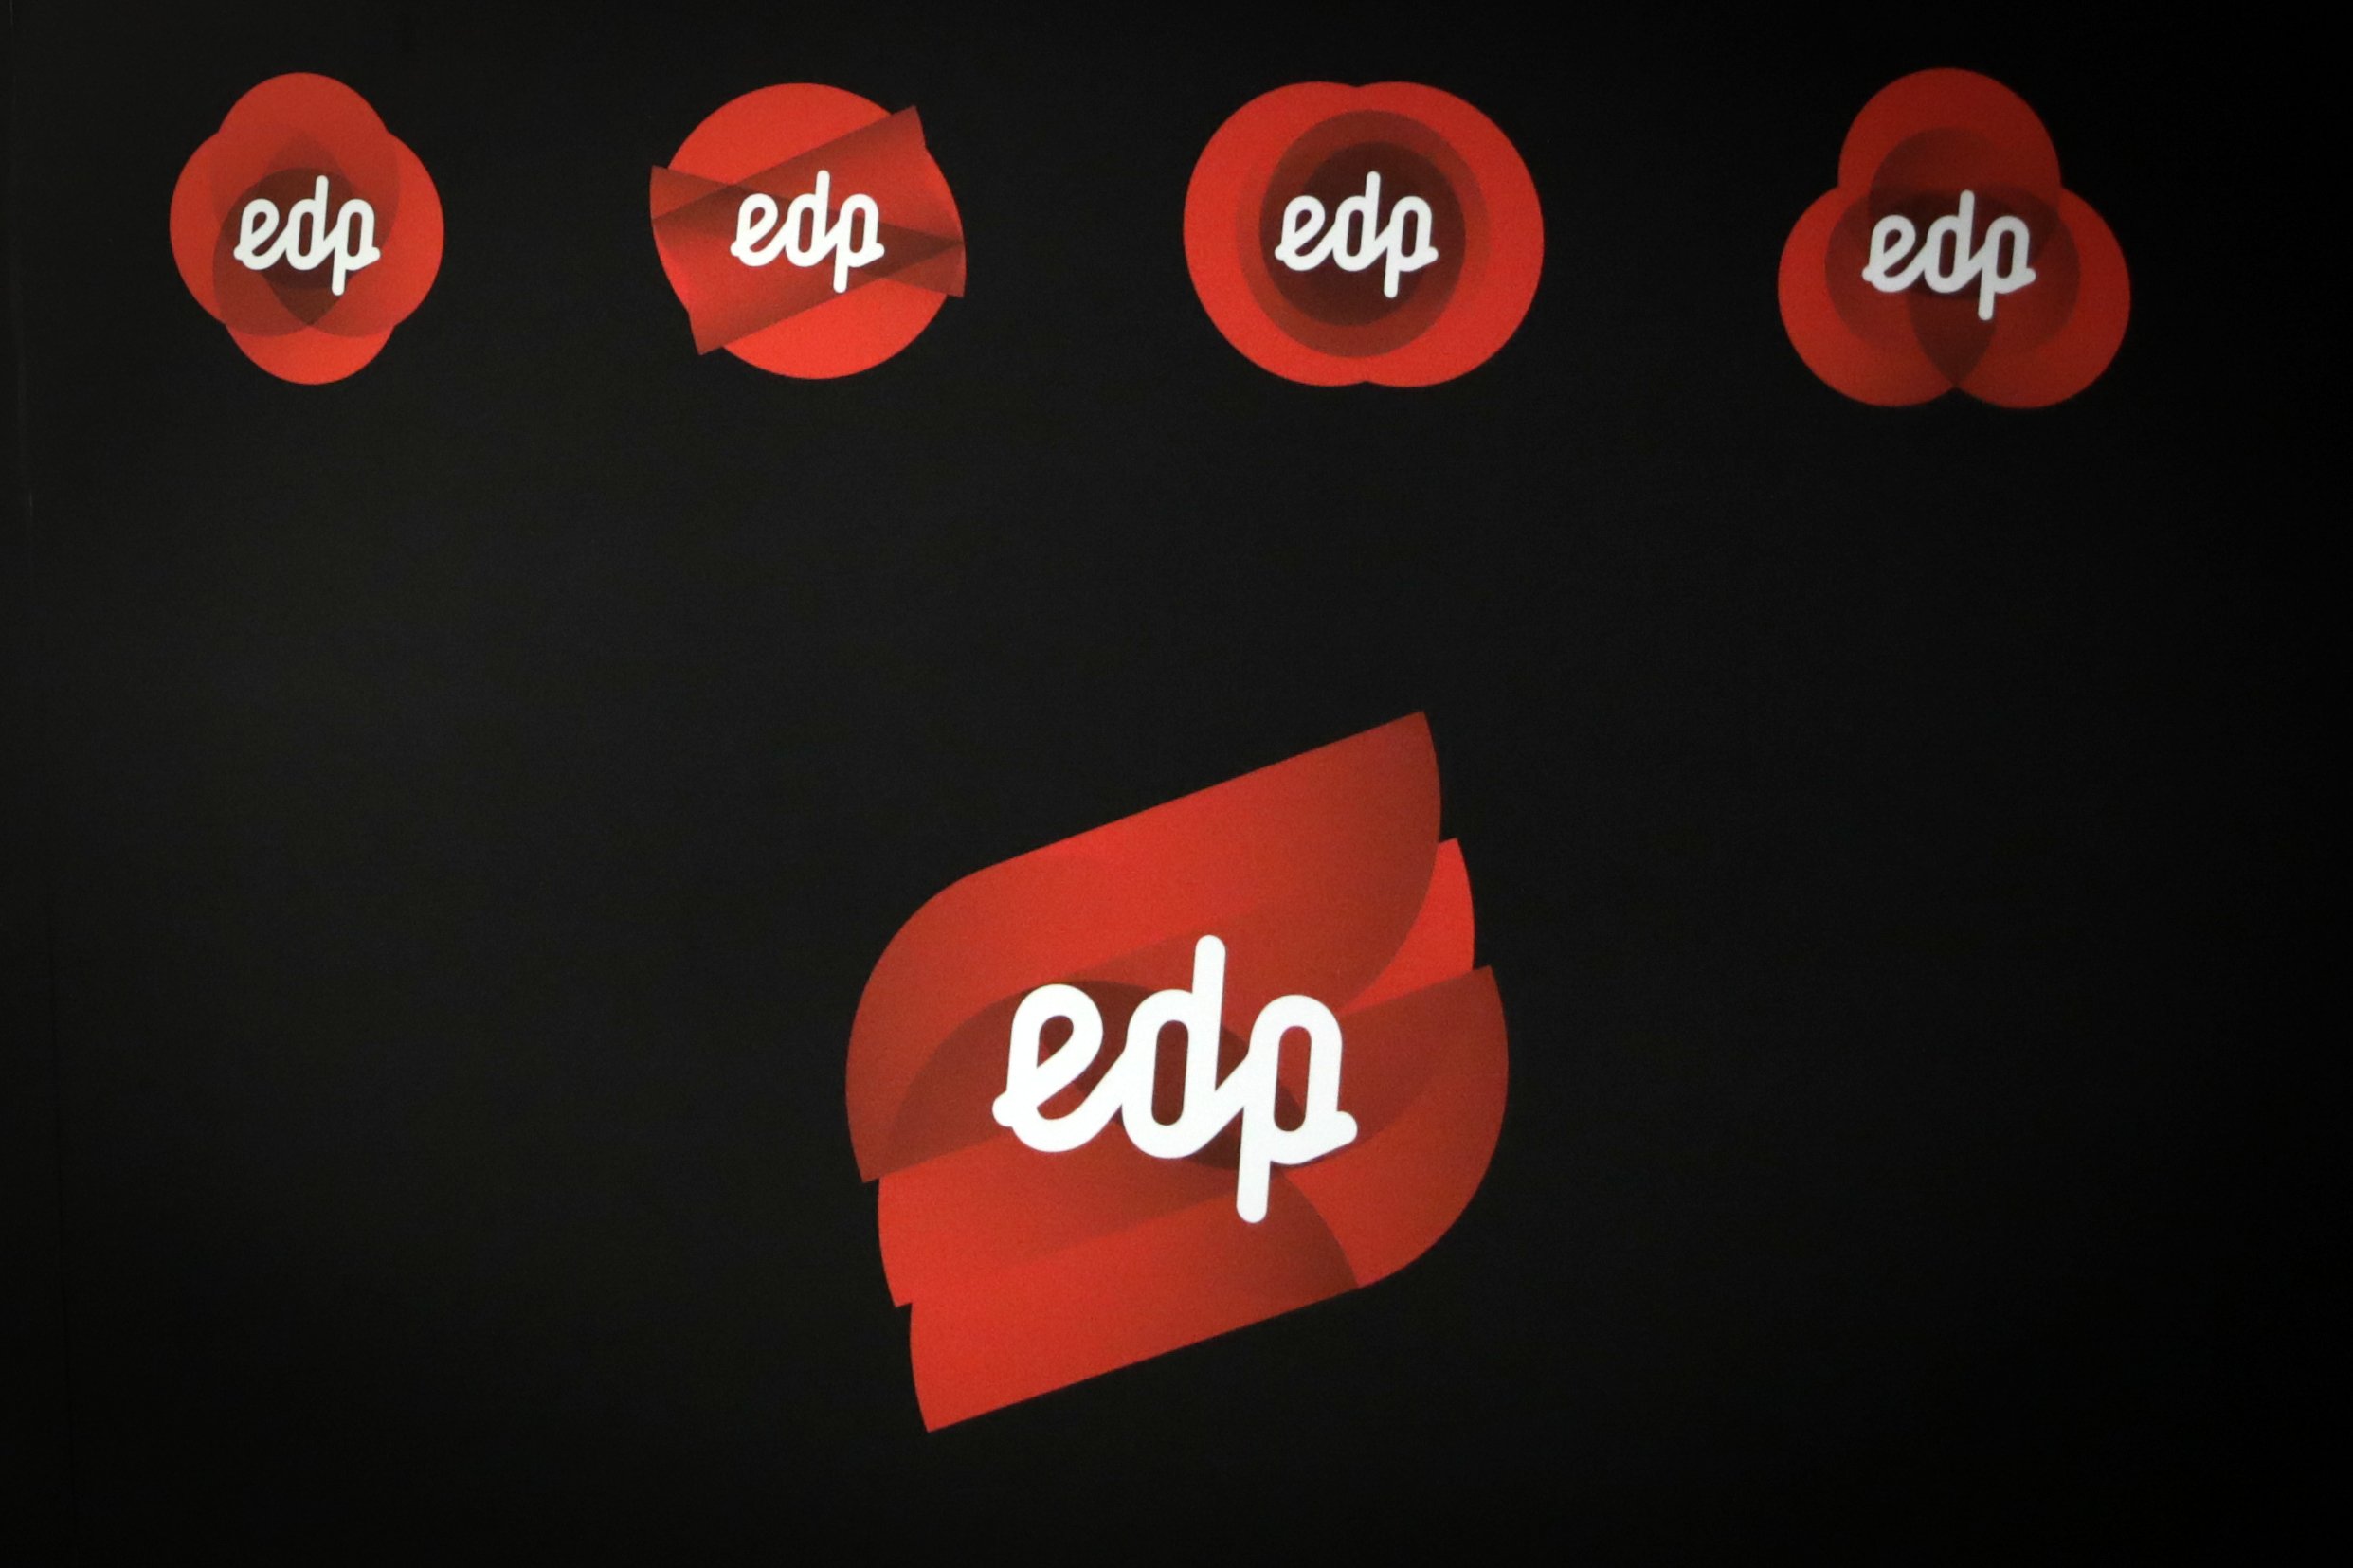 EDP diz não estarem em curso negociações com francesa Engie